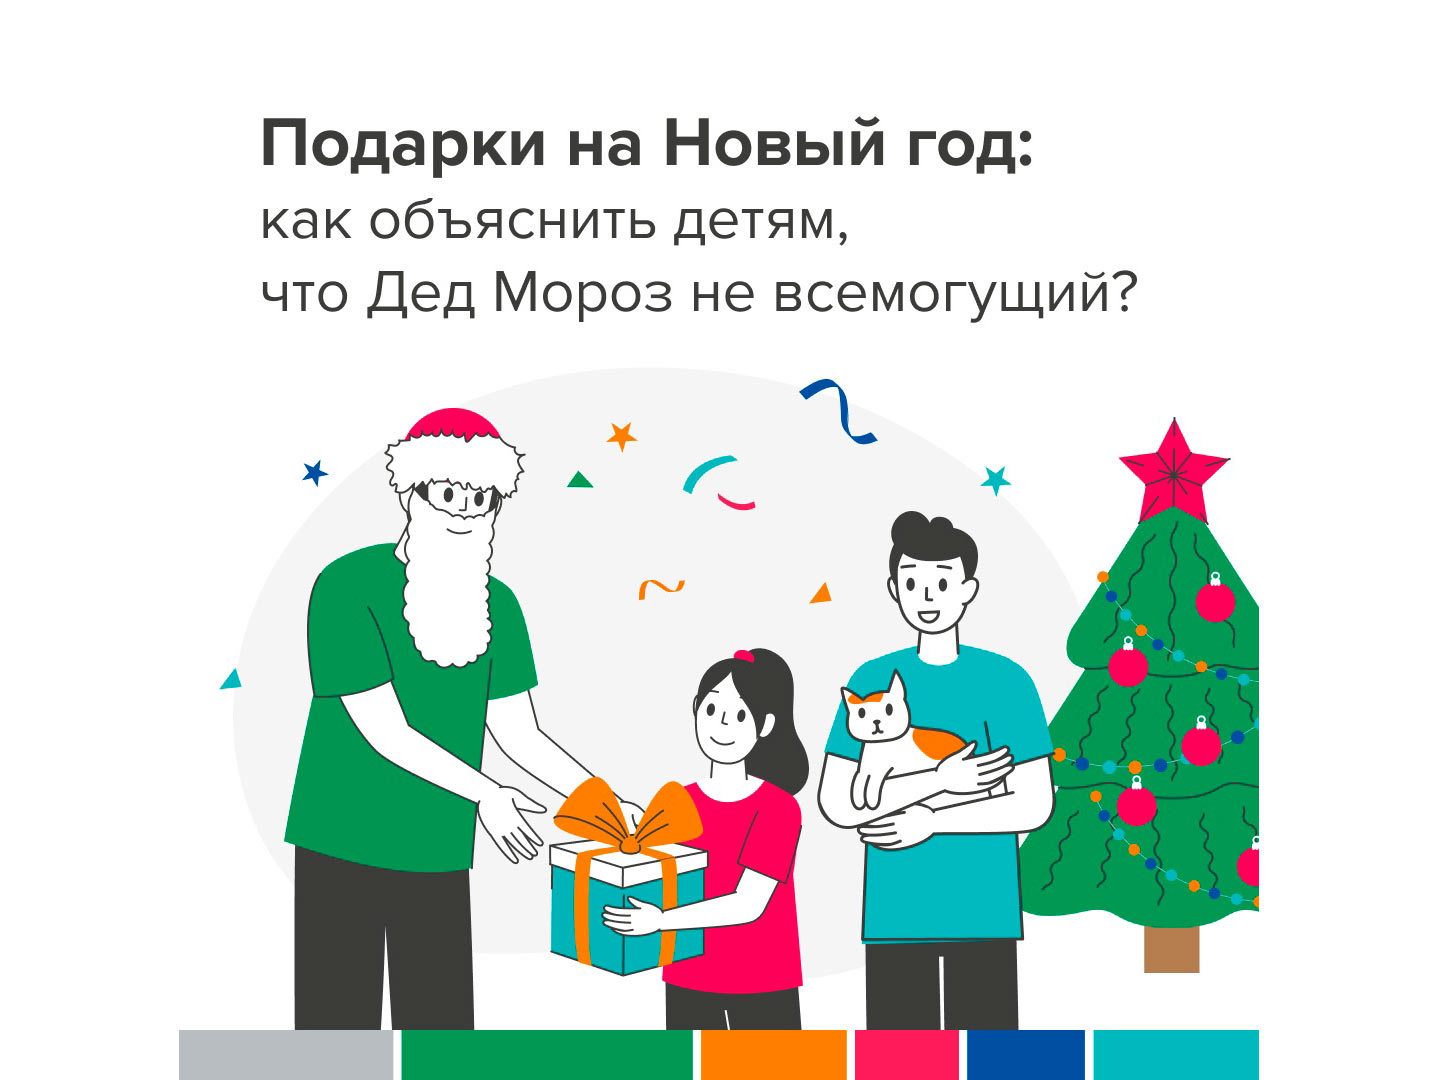 Подарки на Новый год: как объяснить детям, что Дед Мороз не всемогущий?.